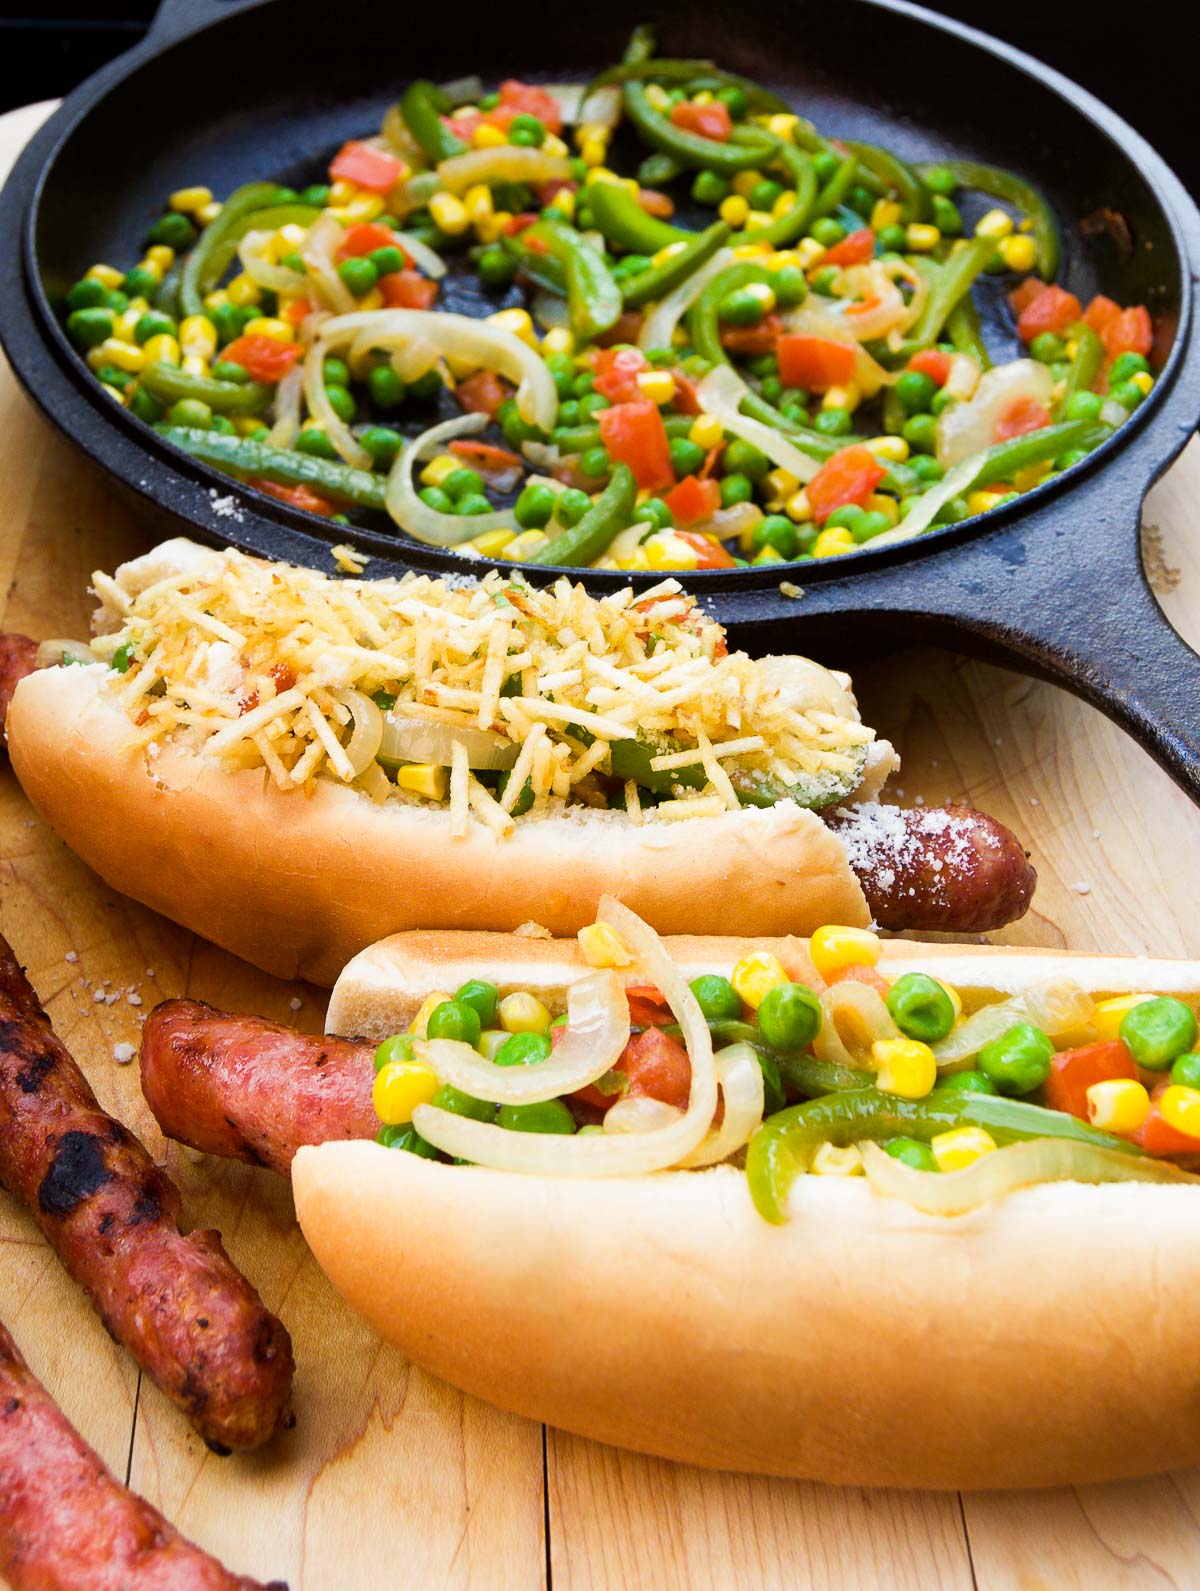 Cachorro Quente - Brazilian Hot Dogs - Brazilian Kitchen Abroad